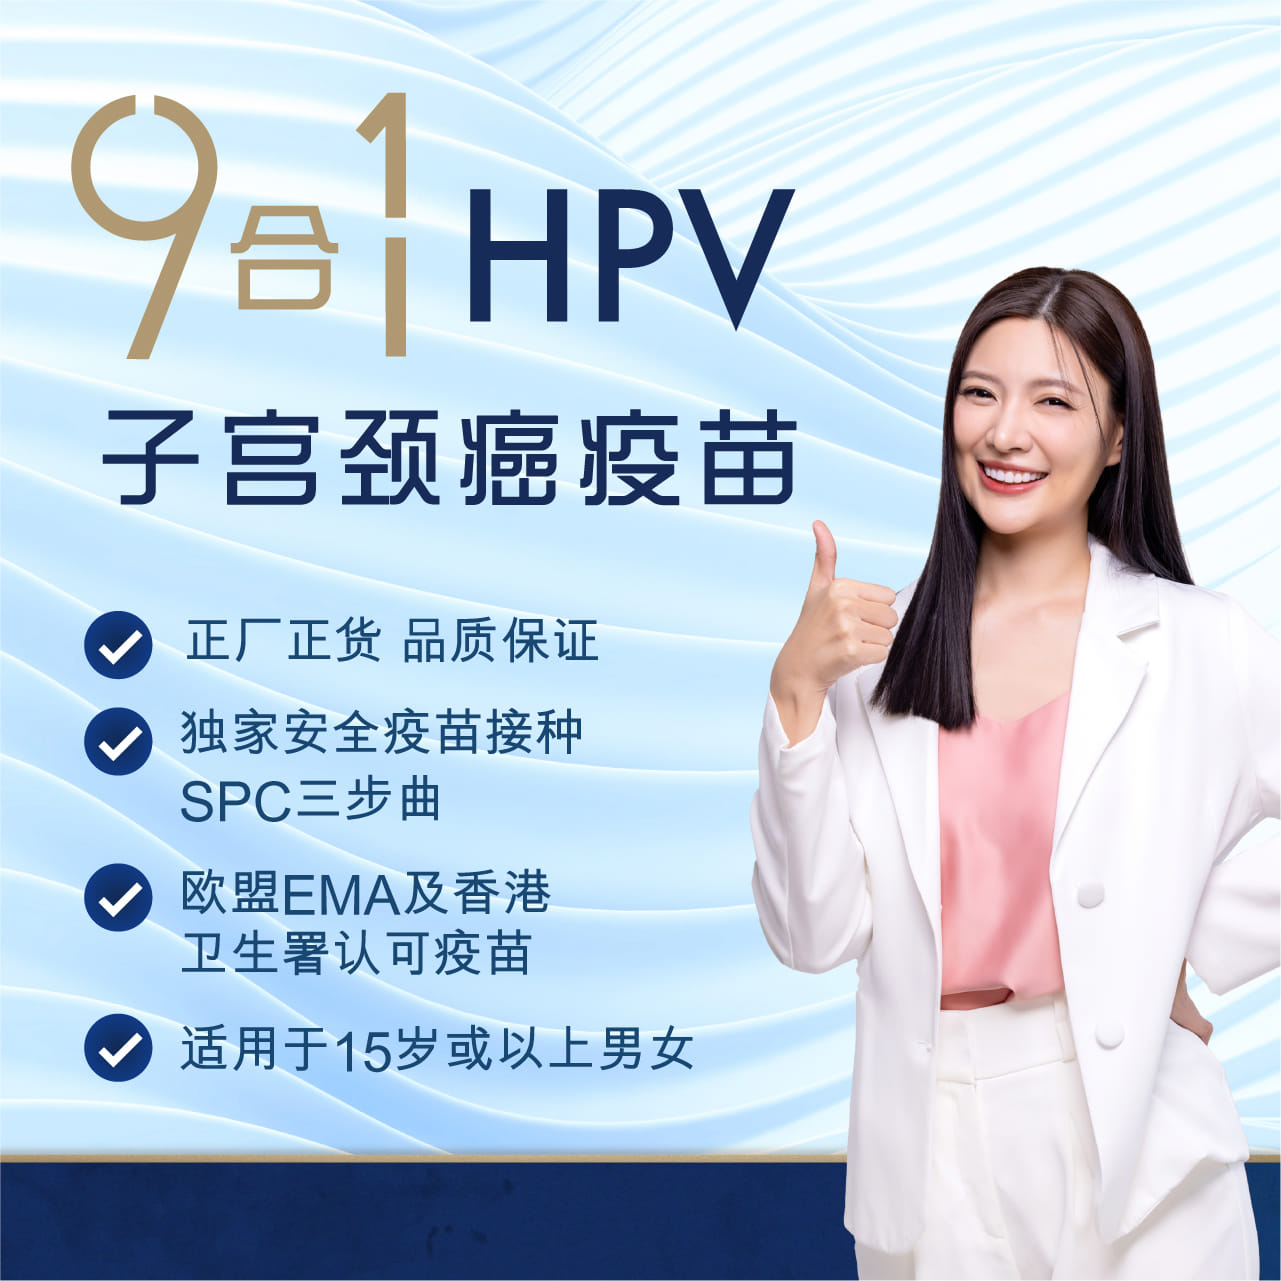 HPV 9合1子宮頸癌疫苗